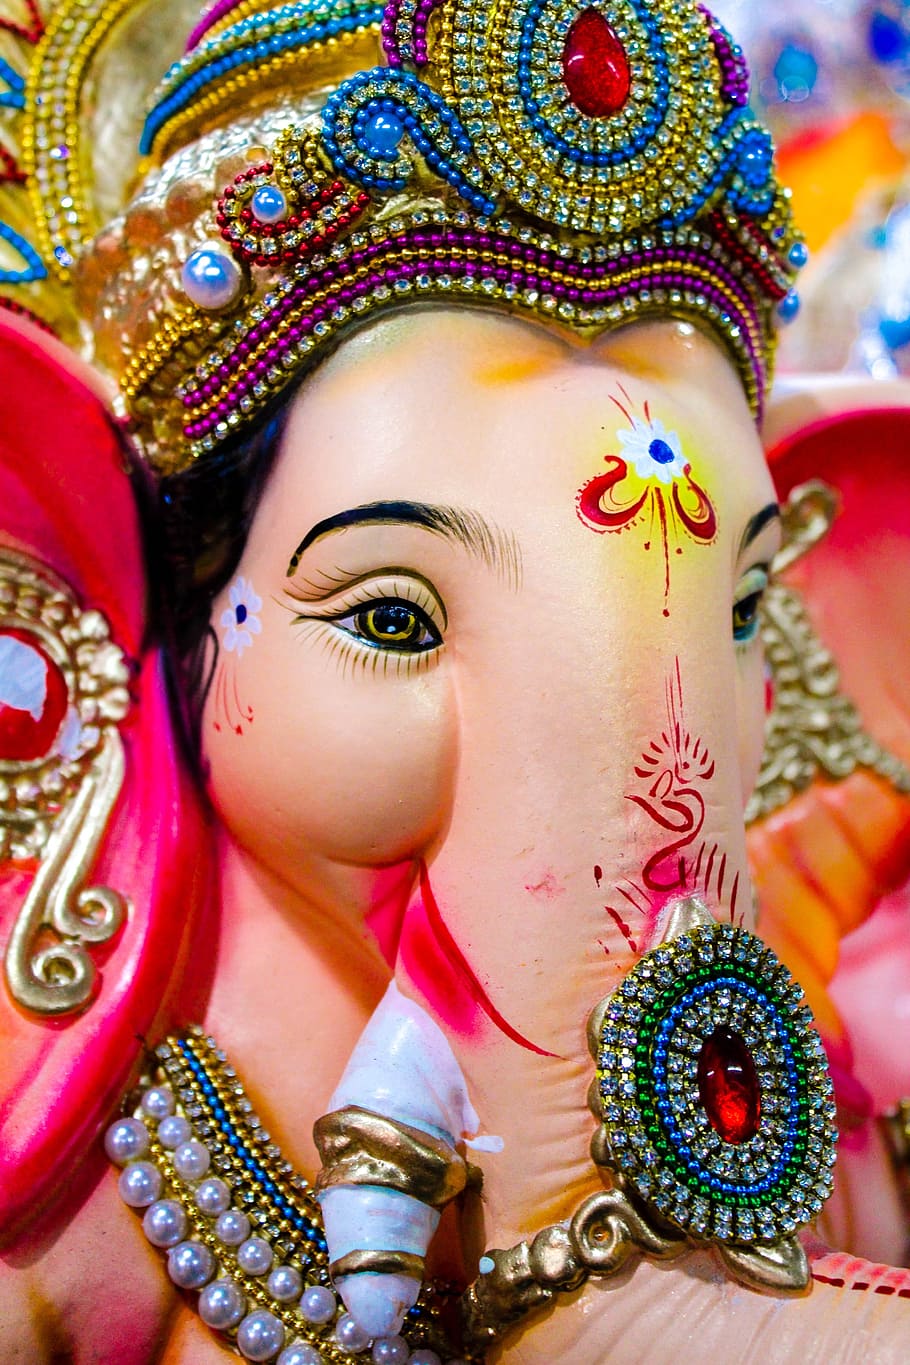 주 님 코끼리 동상, 주 님 코끼리, 주 님 Ganesh, 가네, 코끼리, 인도 주, 인도 신, 아시아 신, 아시아 주, 전통 의상